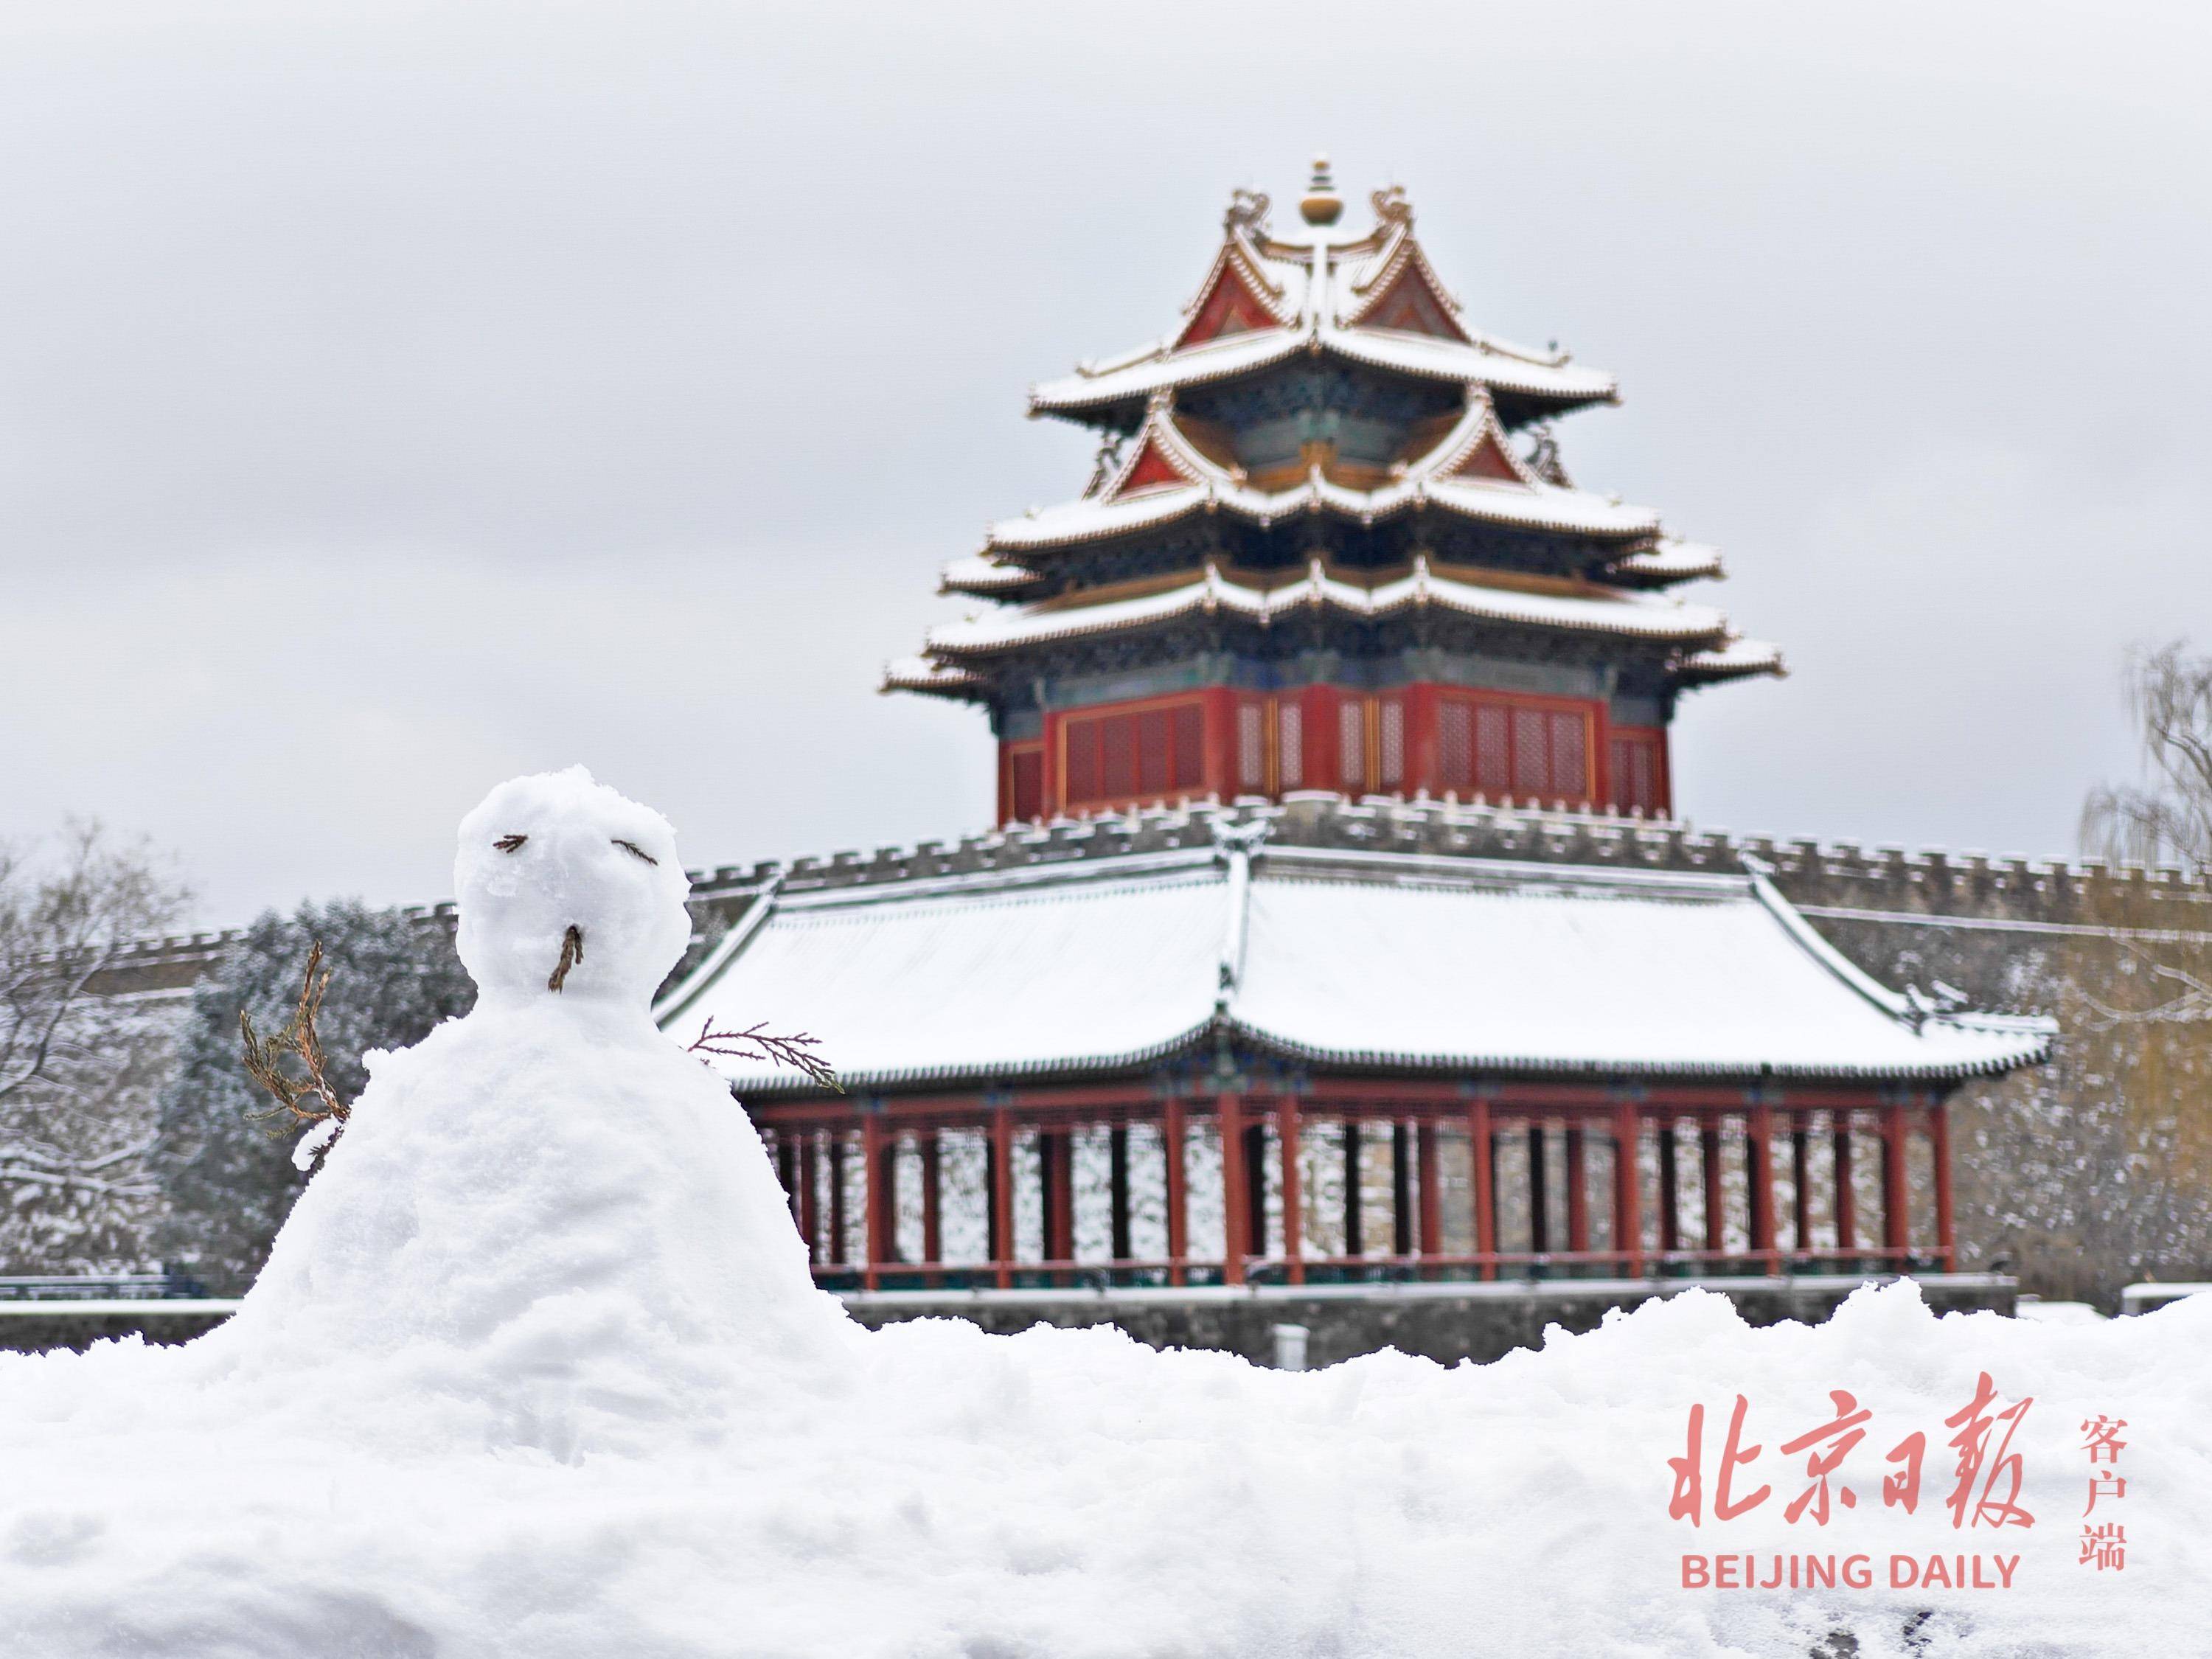 故宫角楼雪景图来了!